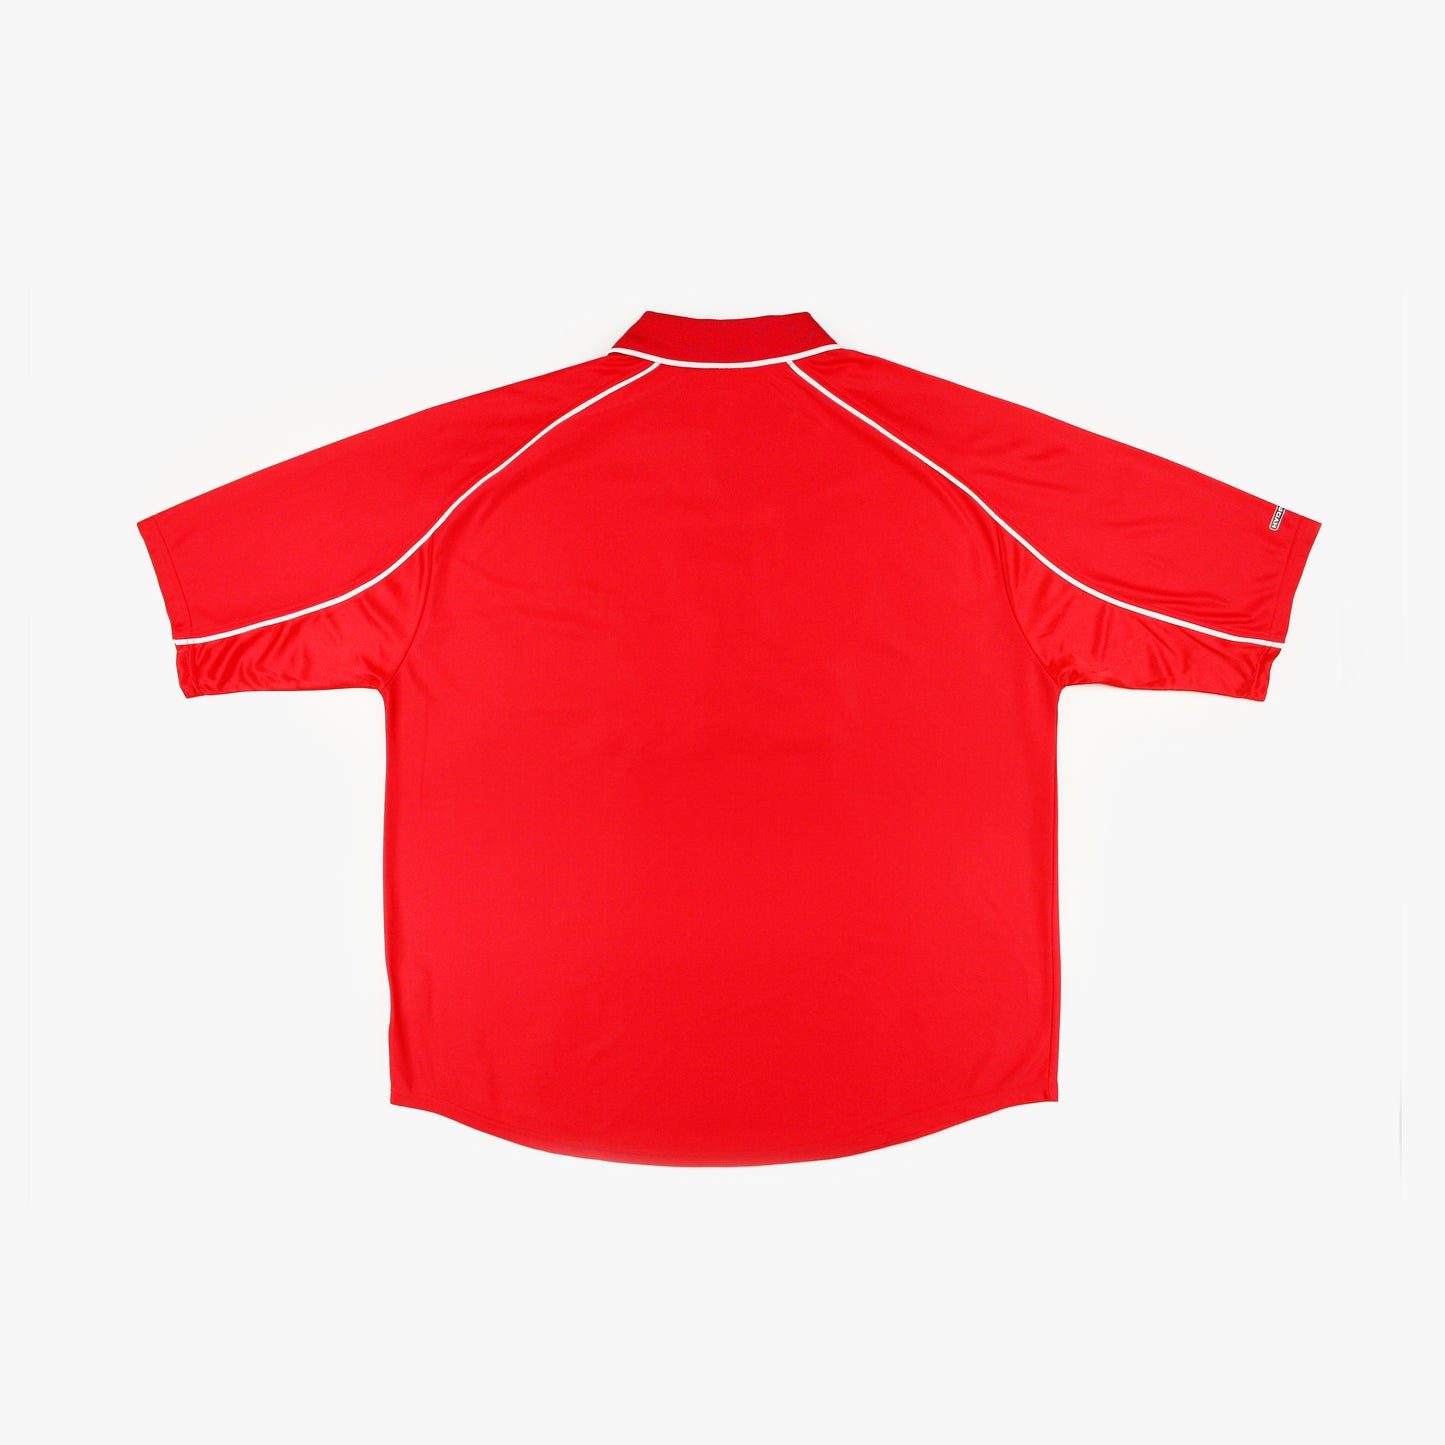 Liverpool 00/02 • Camiseta Local • XL